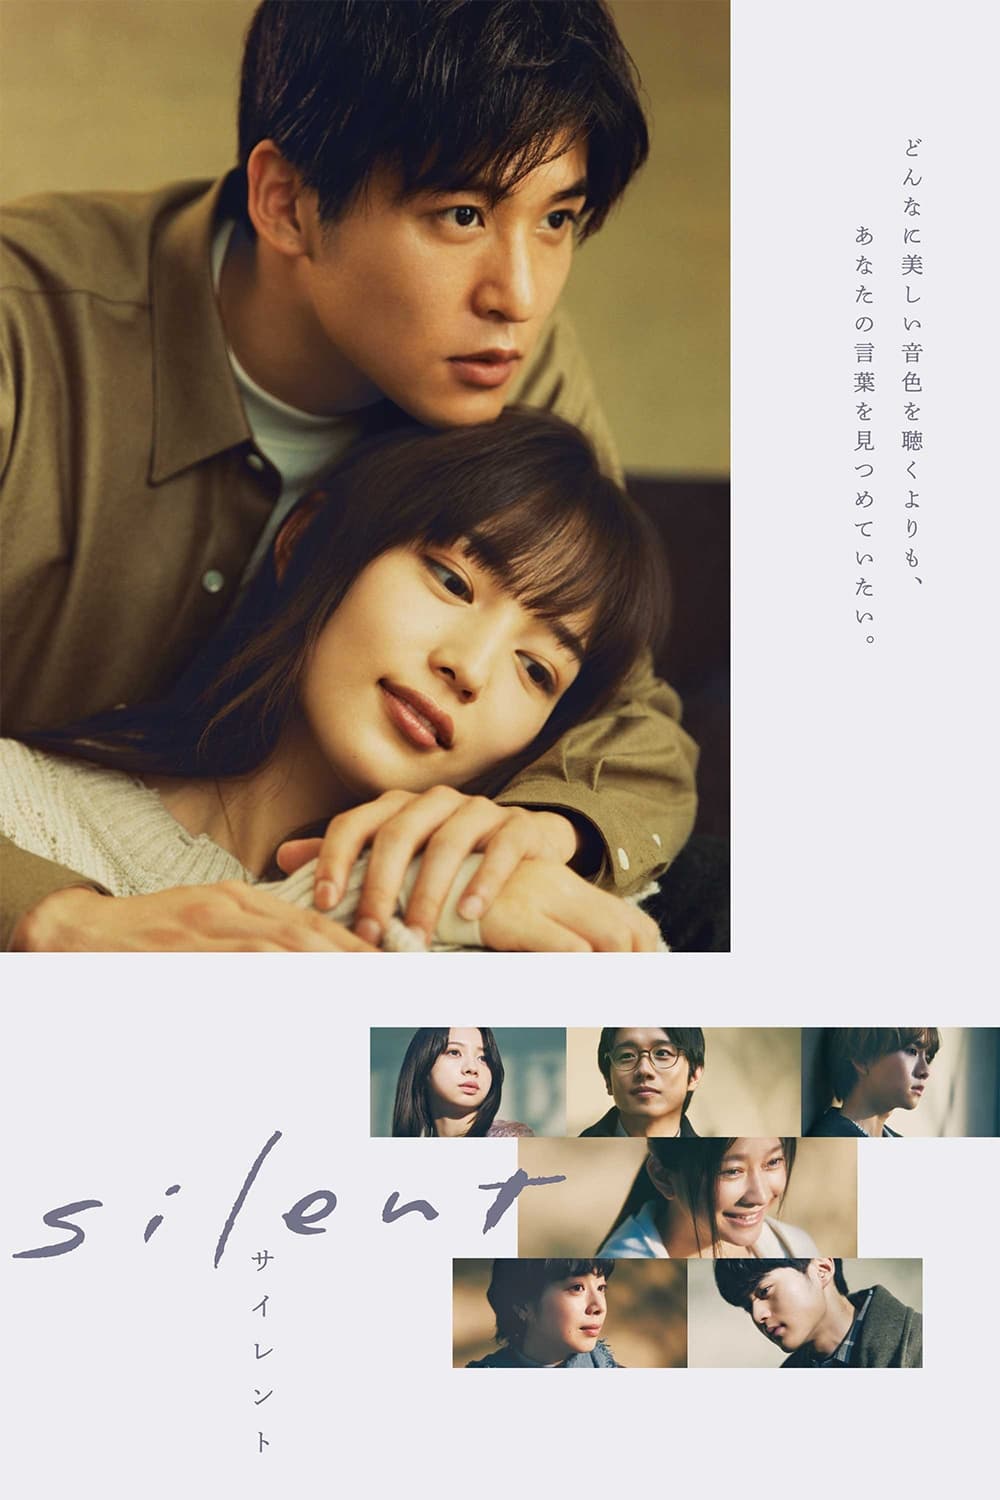 TV ratings for Silent in South Korea. Fuji TV TV series